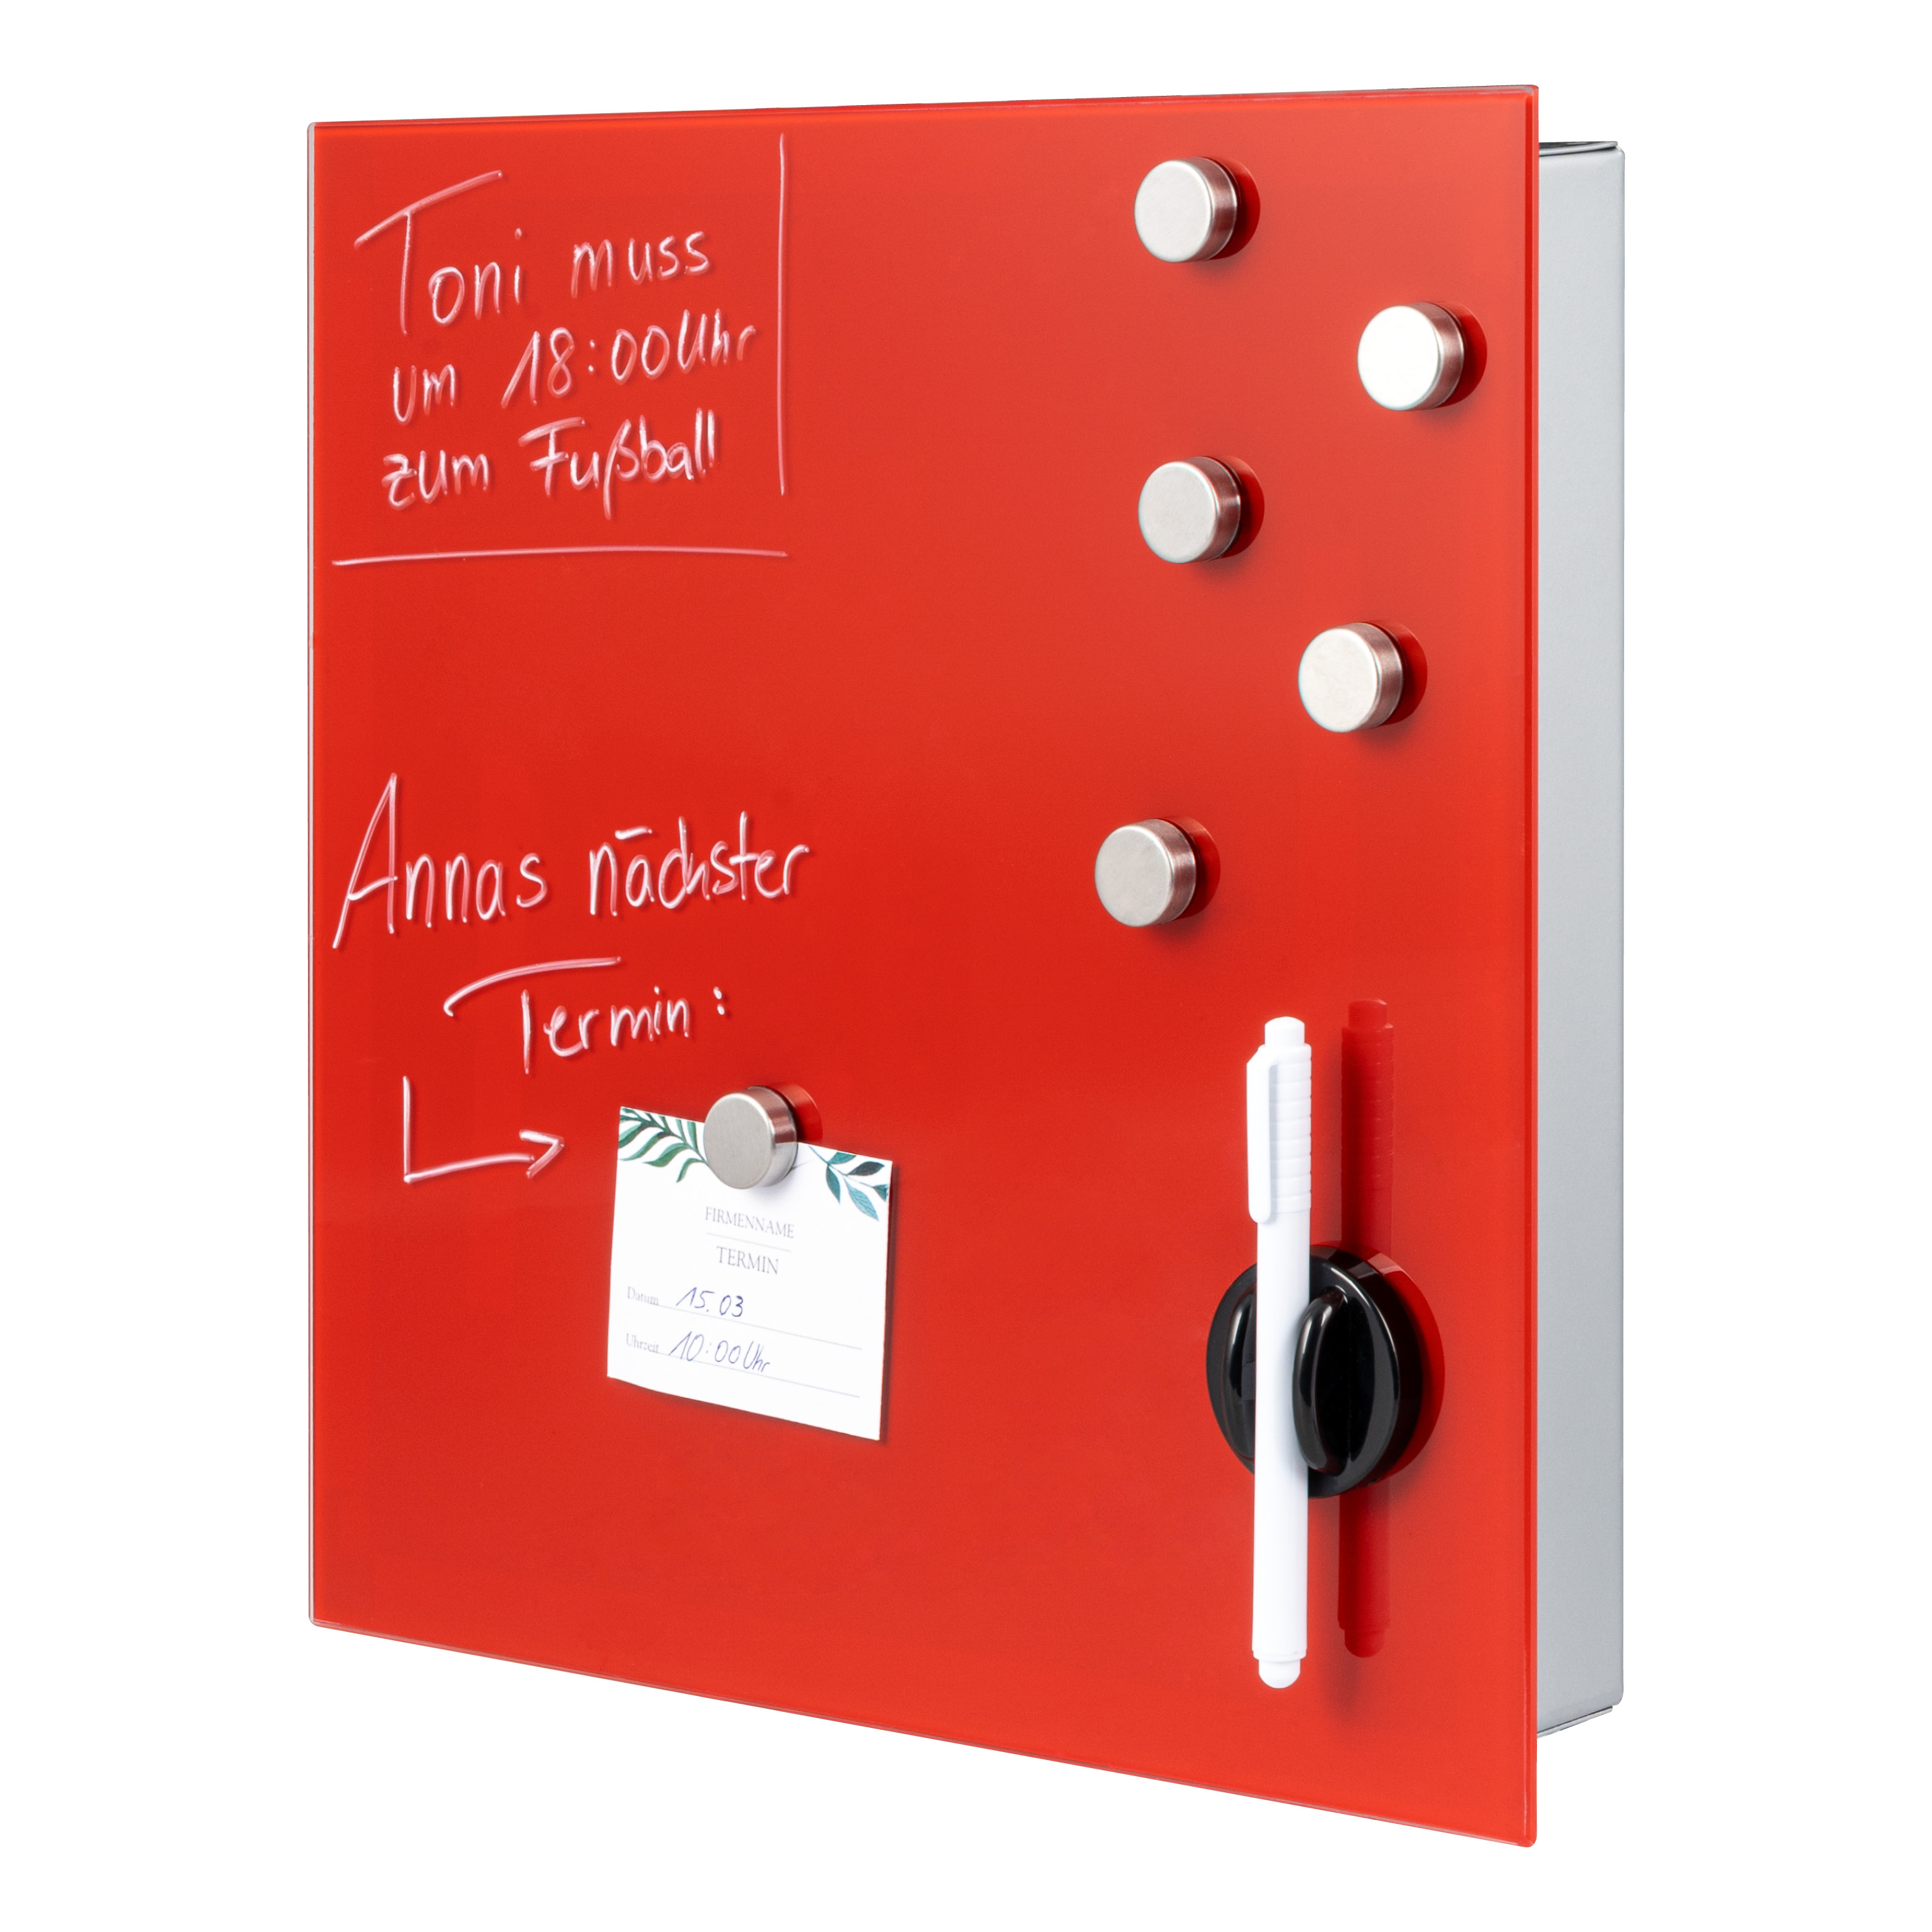 Schlüsselkasten XL mit roter Glasfront, beschreibbar, 13 Haken, 6 Magnete, 1 Marker, 1 Marker-Halter